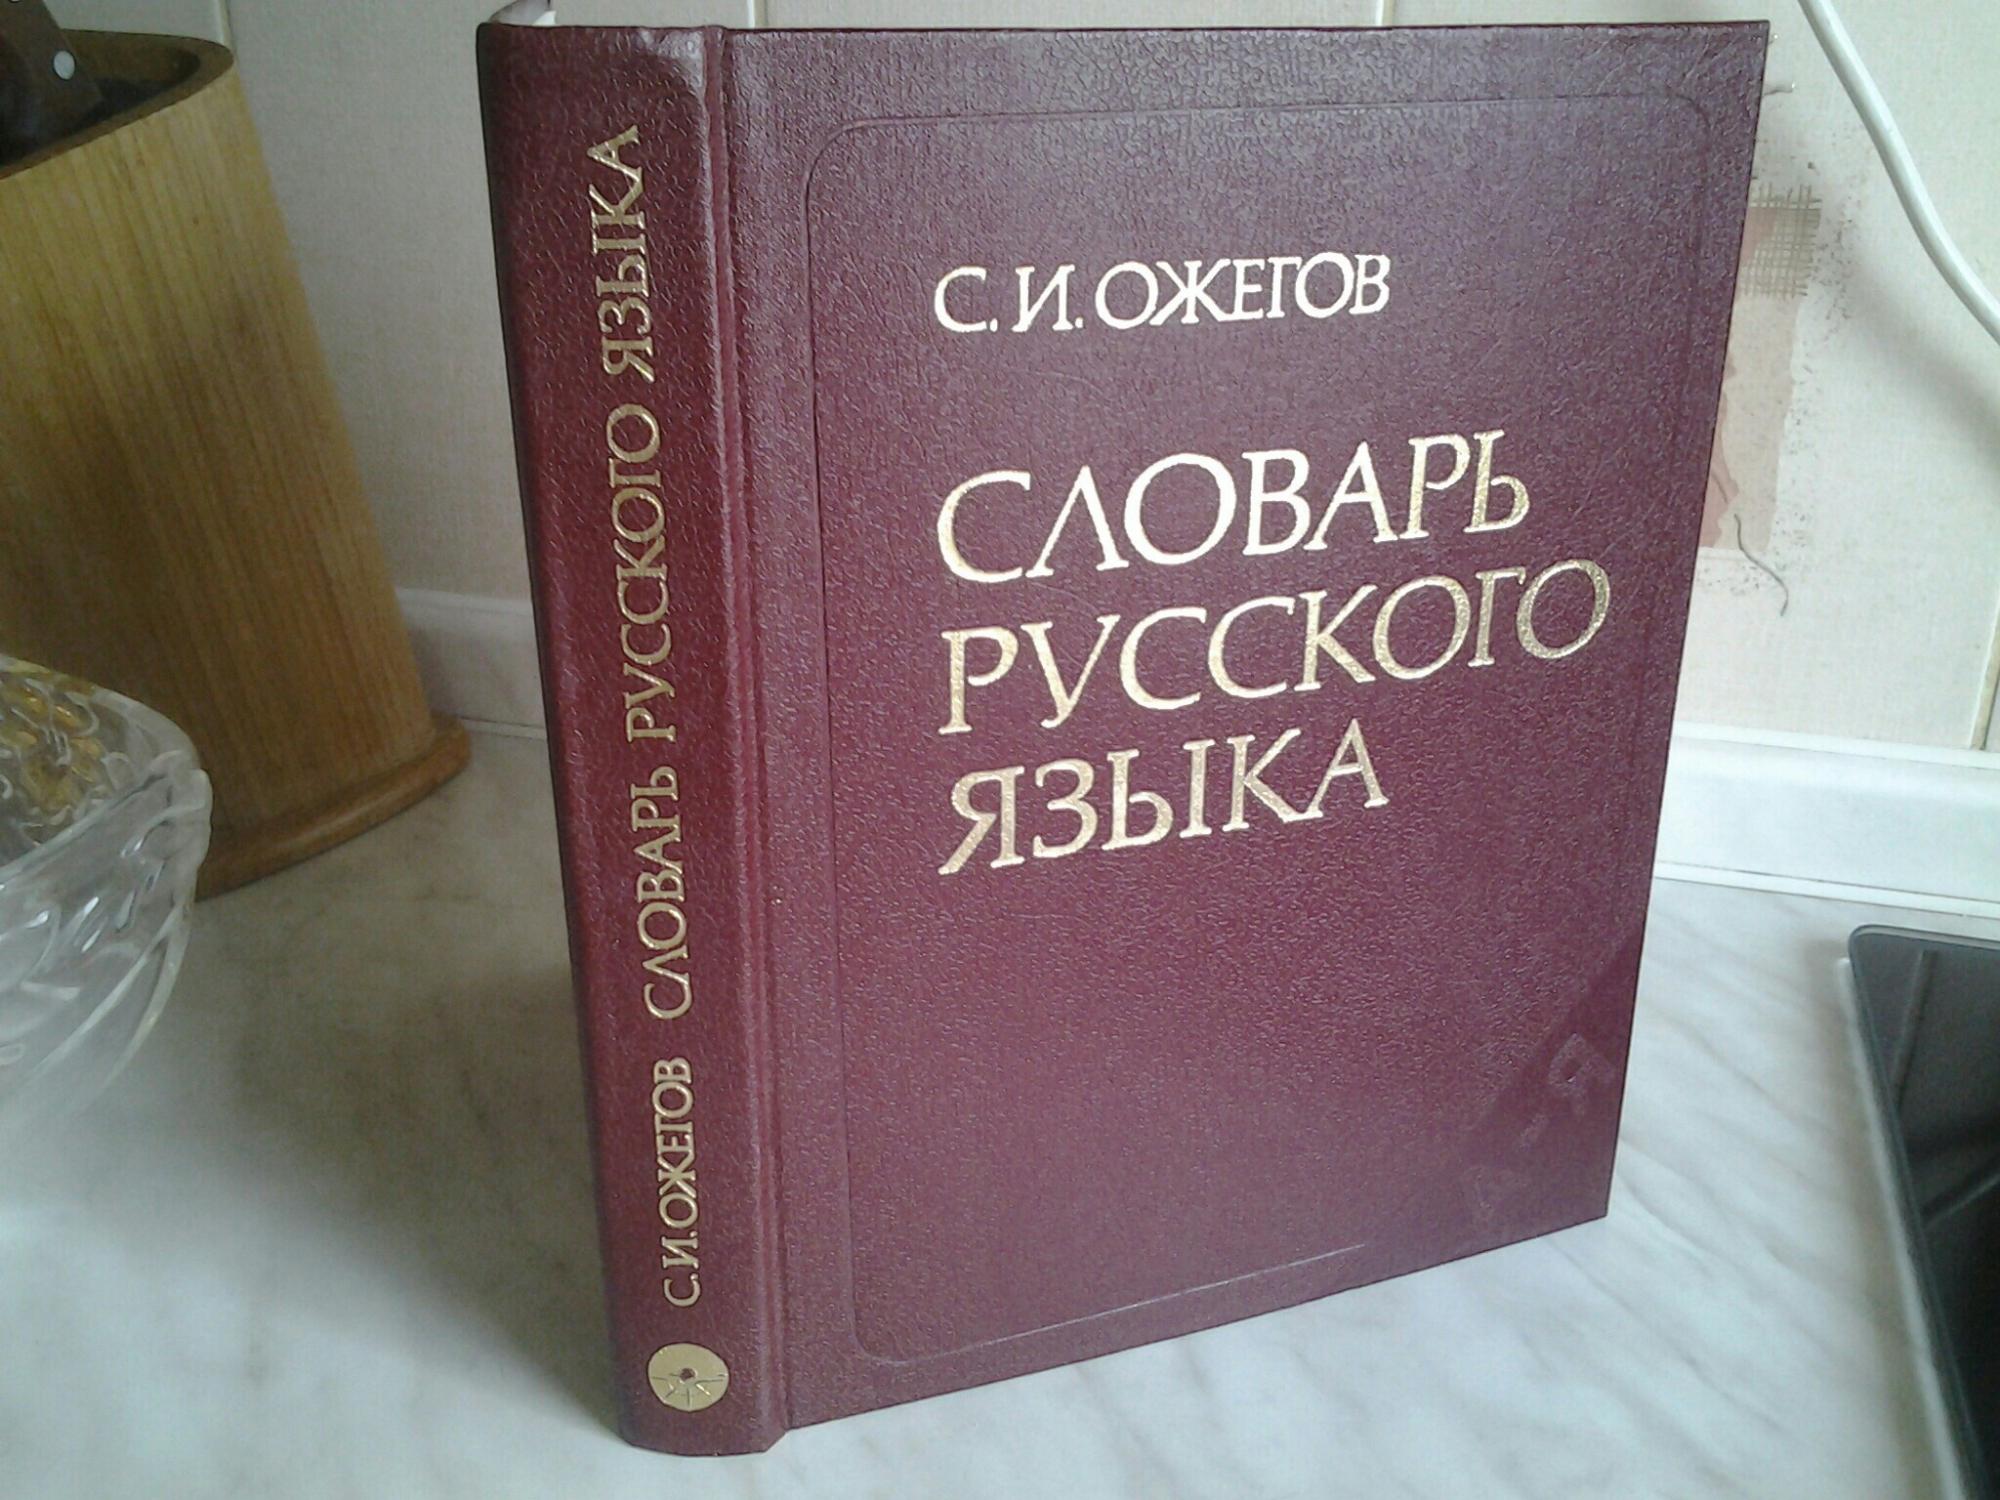 Ожегов словарь русского языка